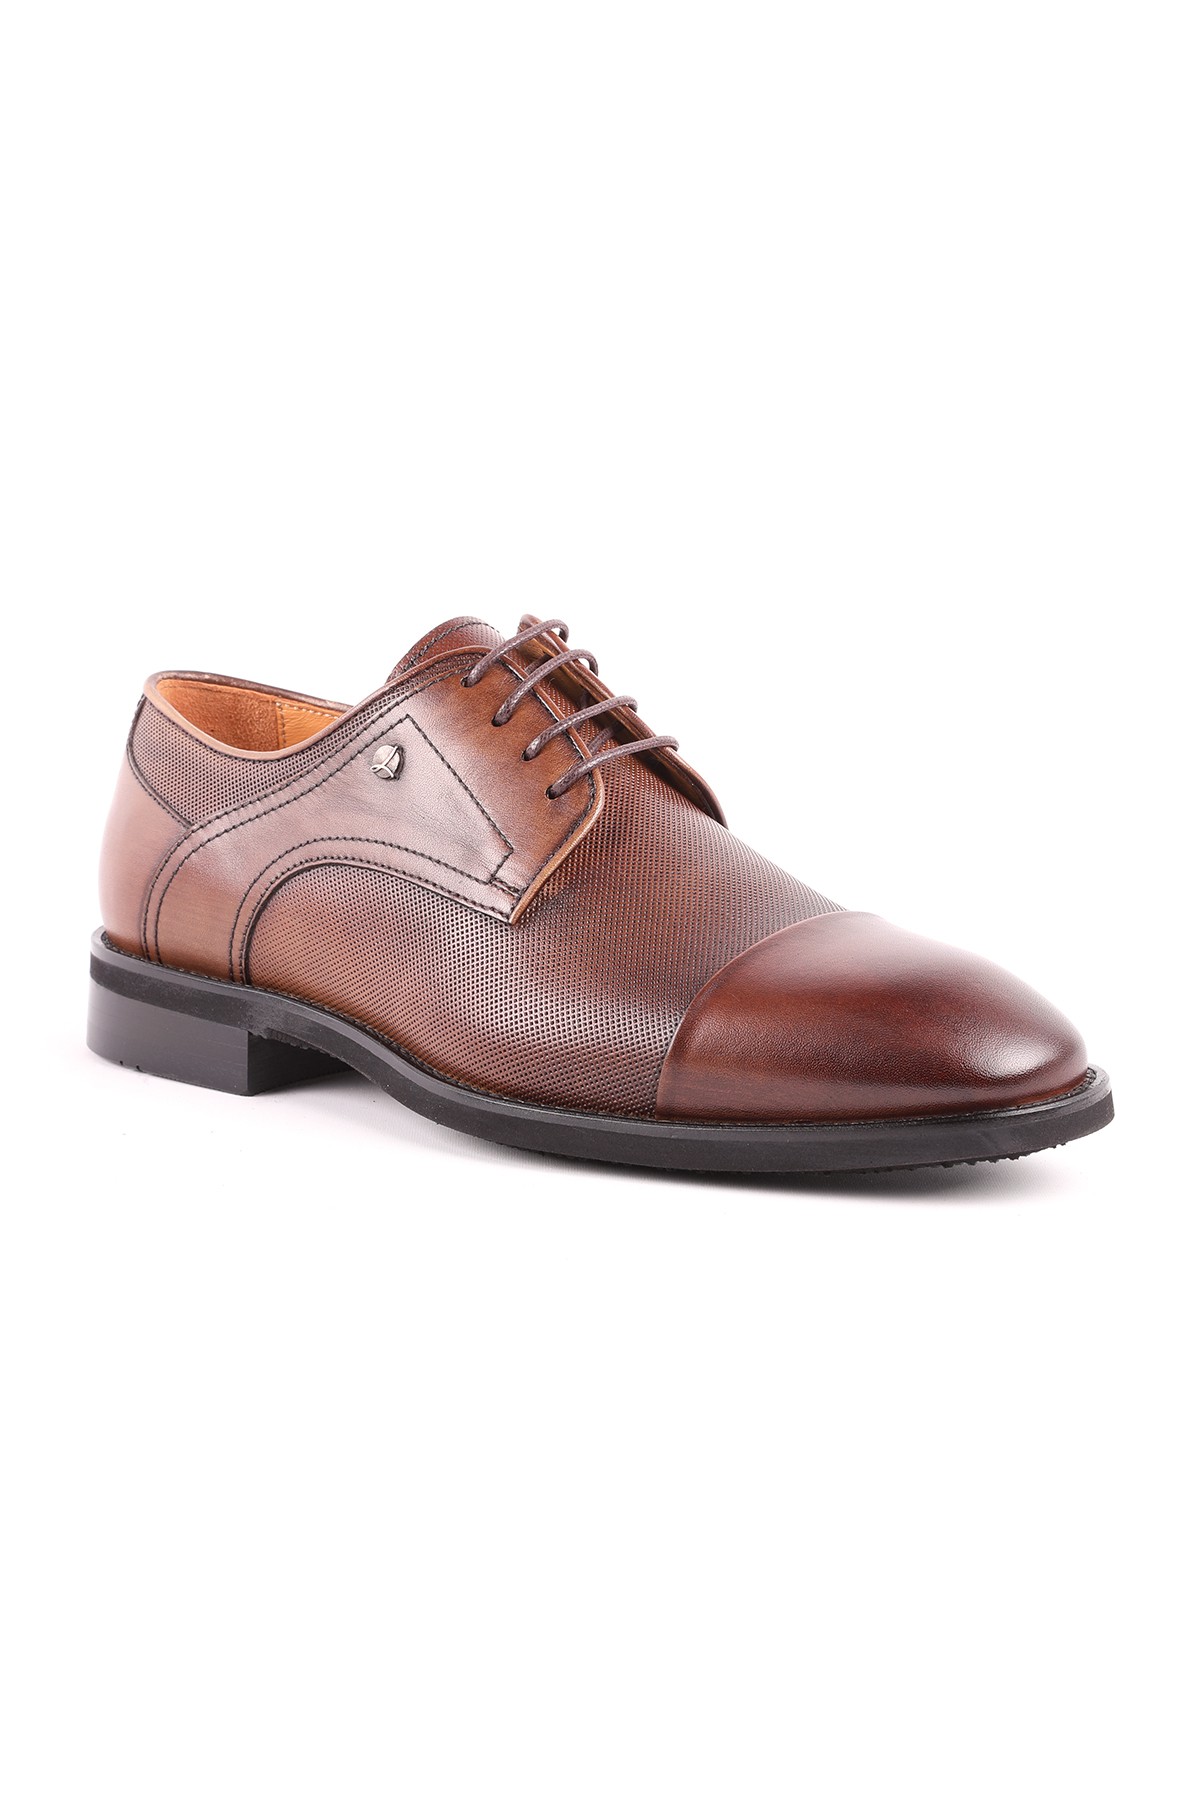 Libero L5182 Deri Erkek Klasik Ayakkabı - CEVİZ